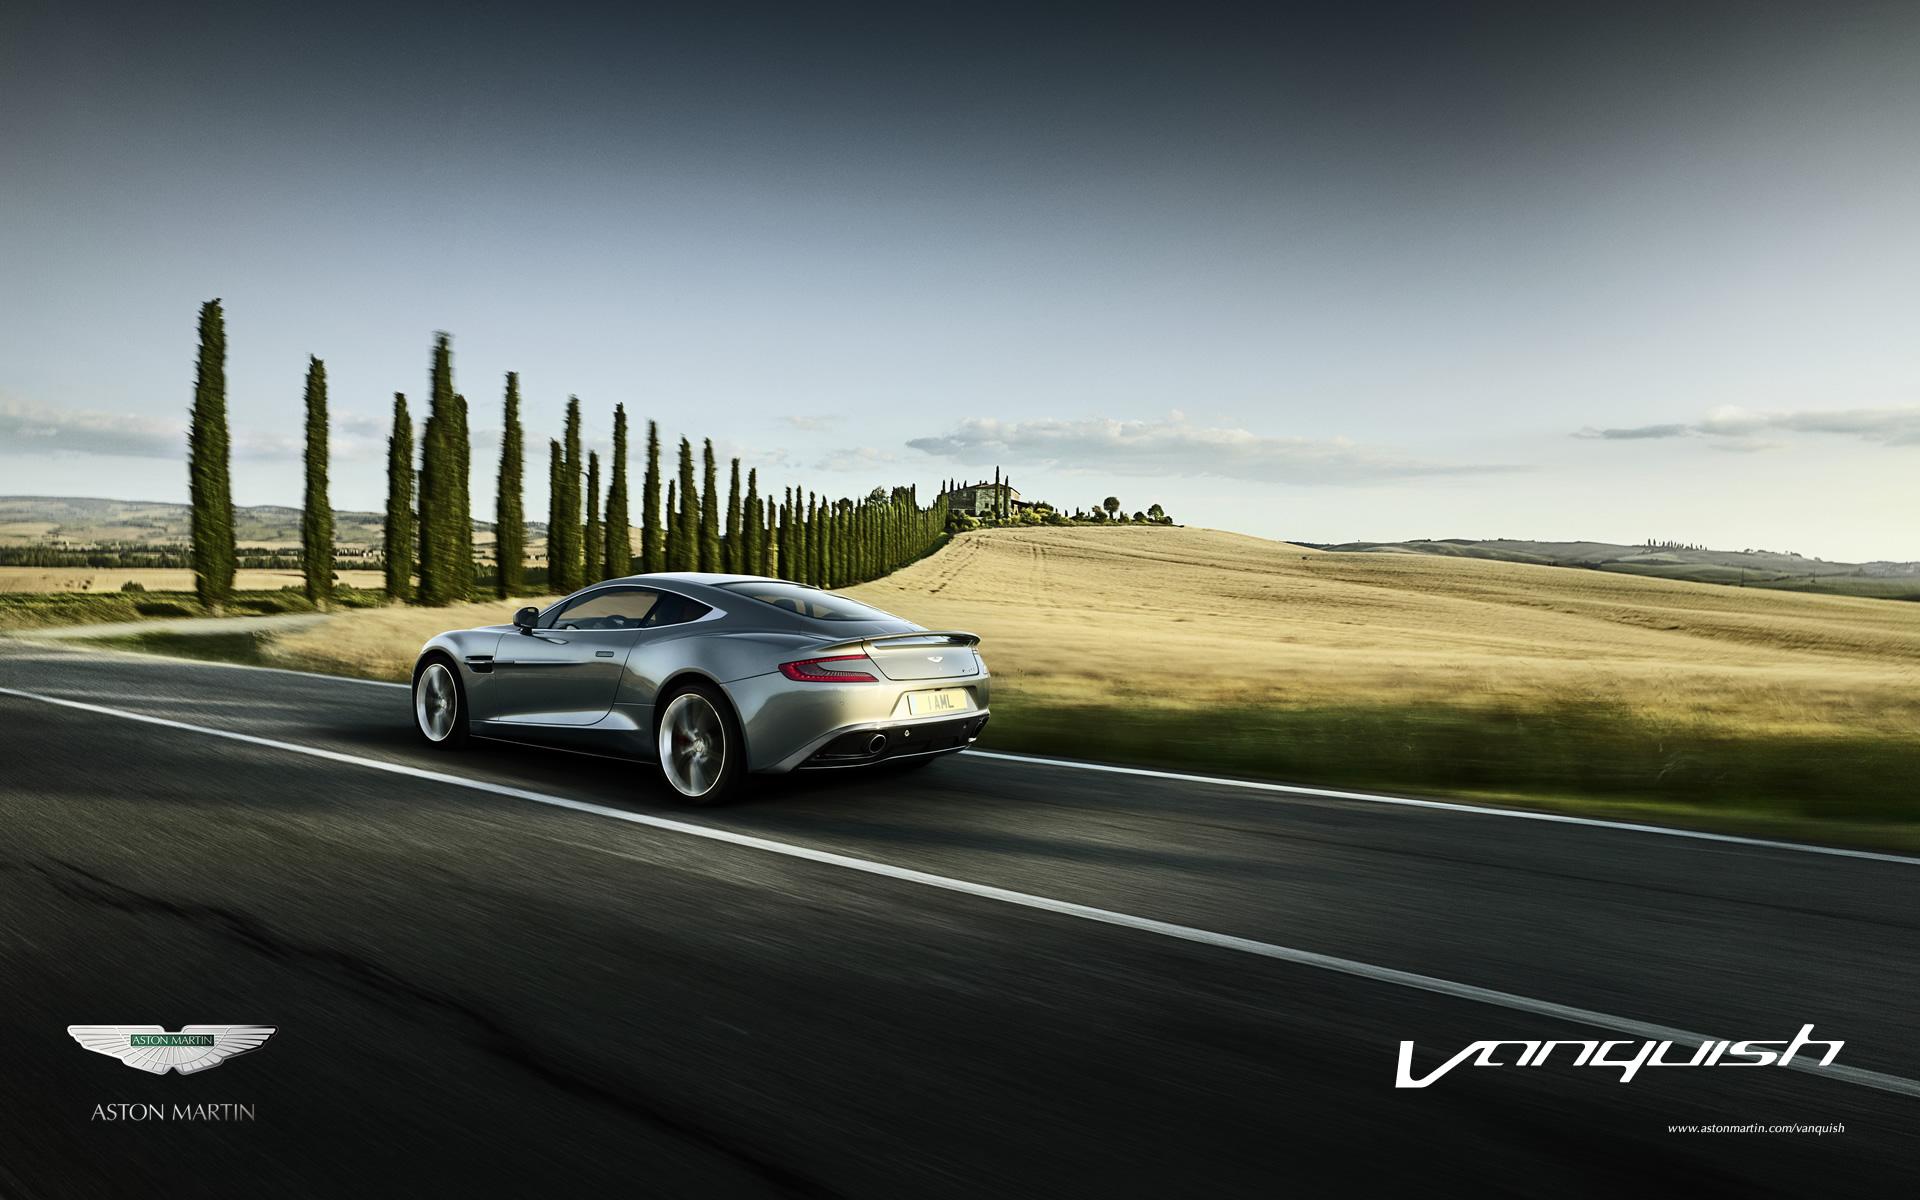 Aston Martin Vanquish Wallpaper Widescreen #W4B